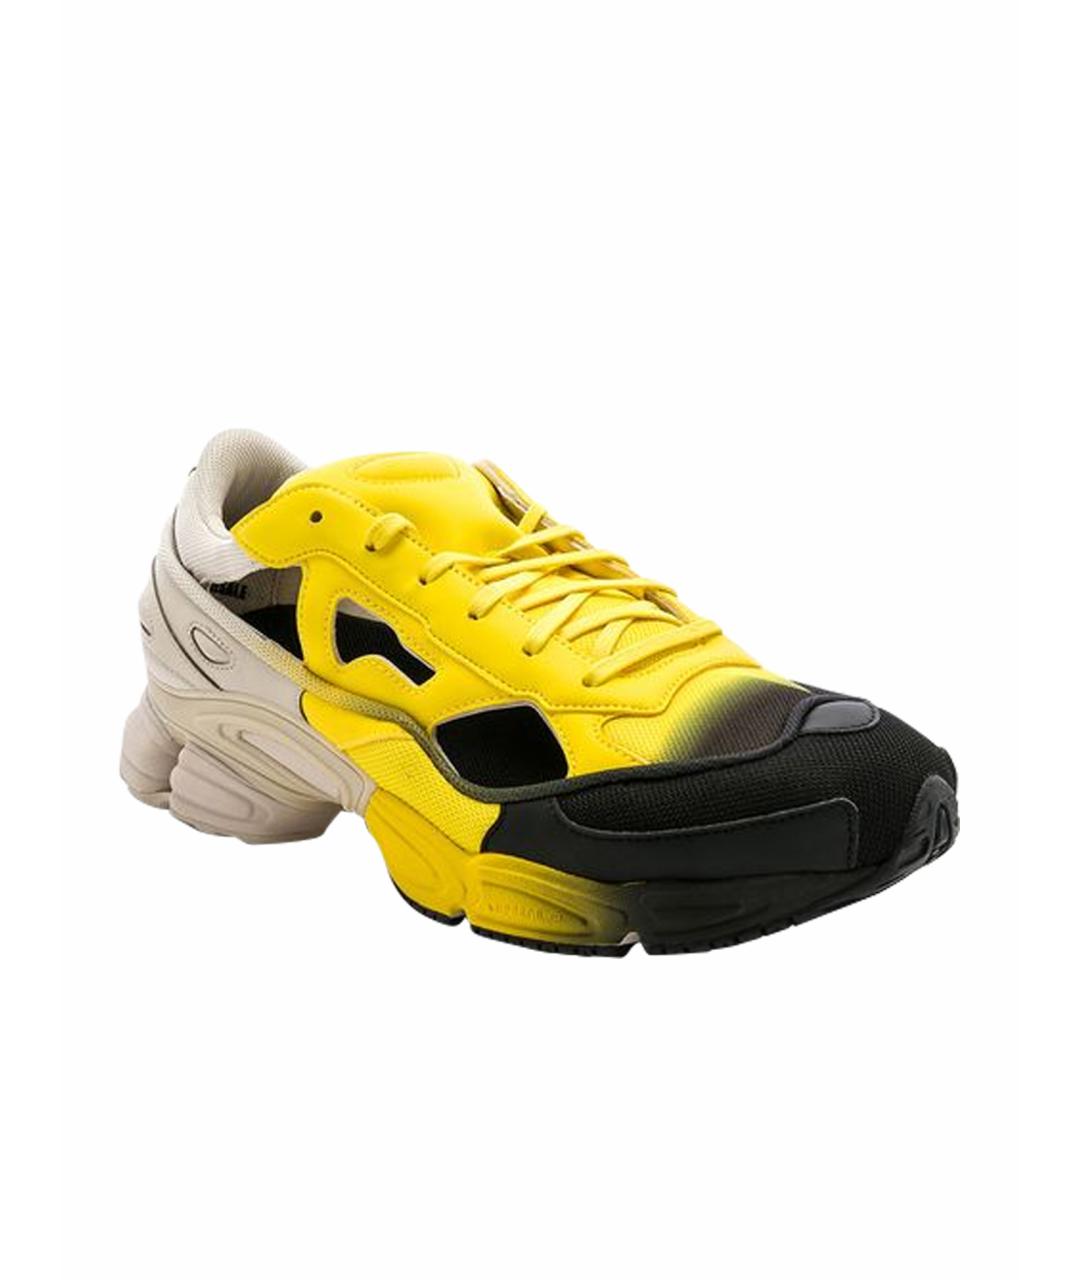 ADIDAS X RAF SIMONS Желтые кожаные низкие кроссовки / кеды, фото 1